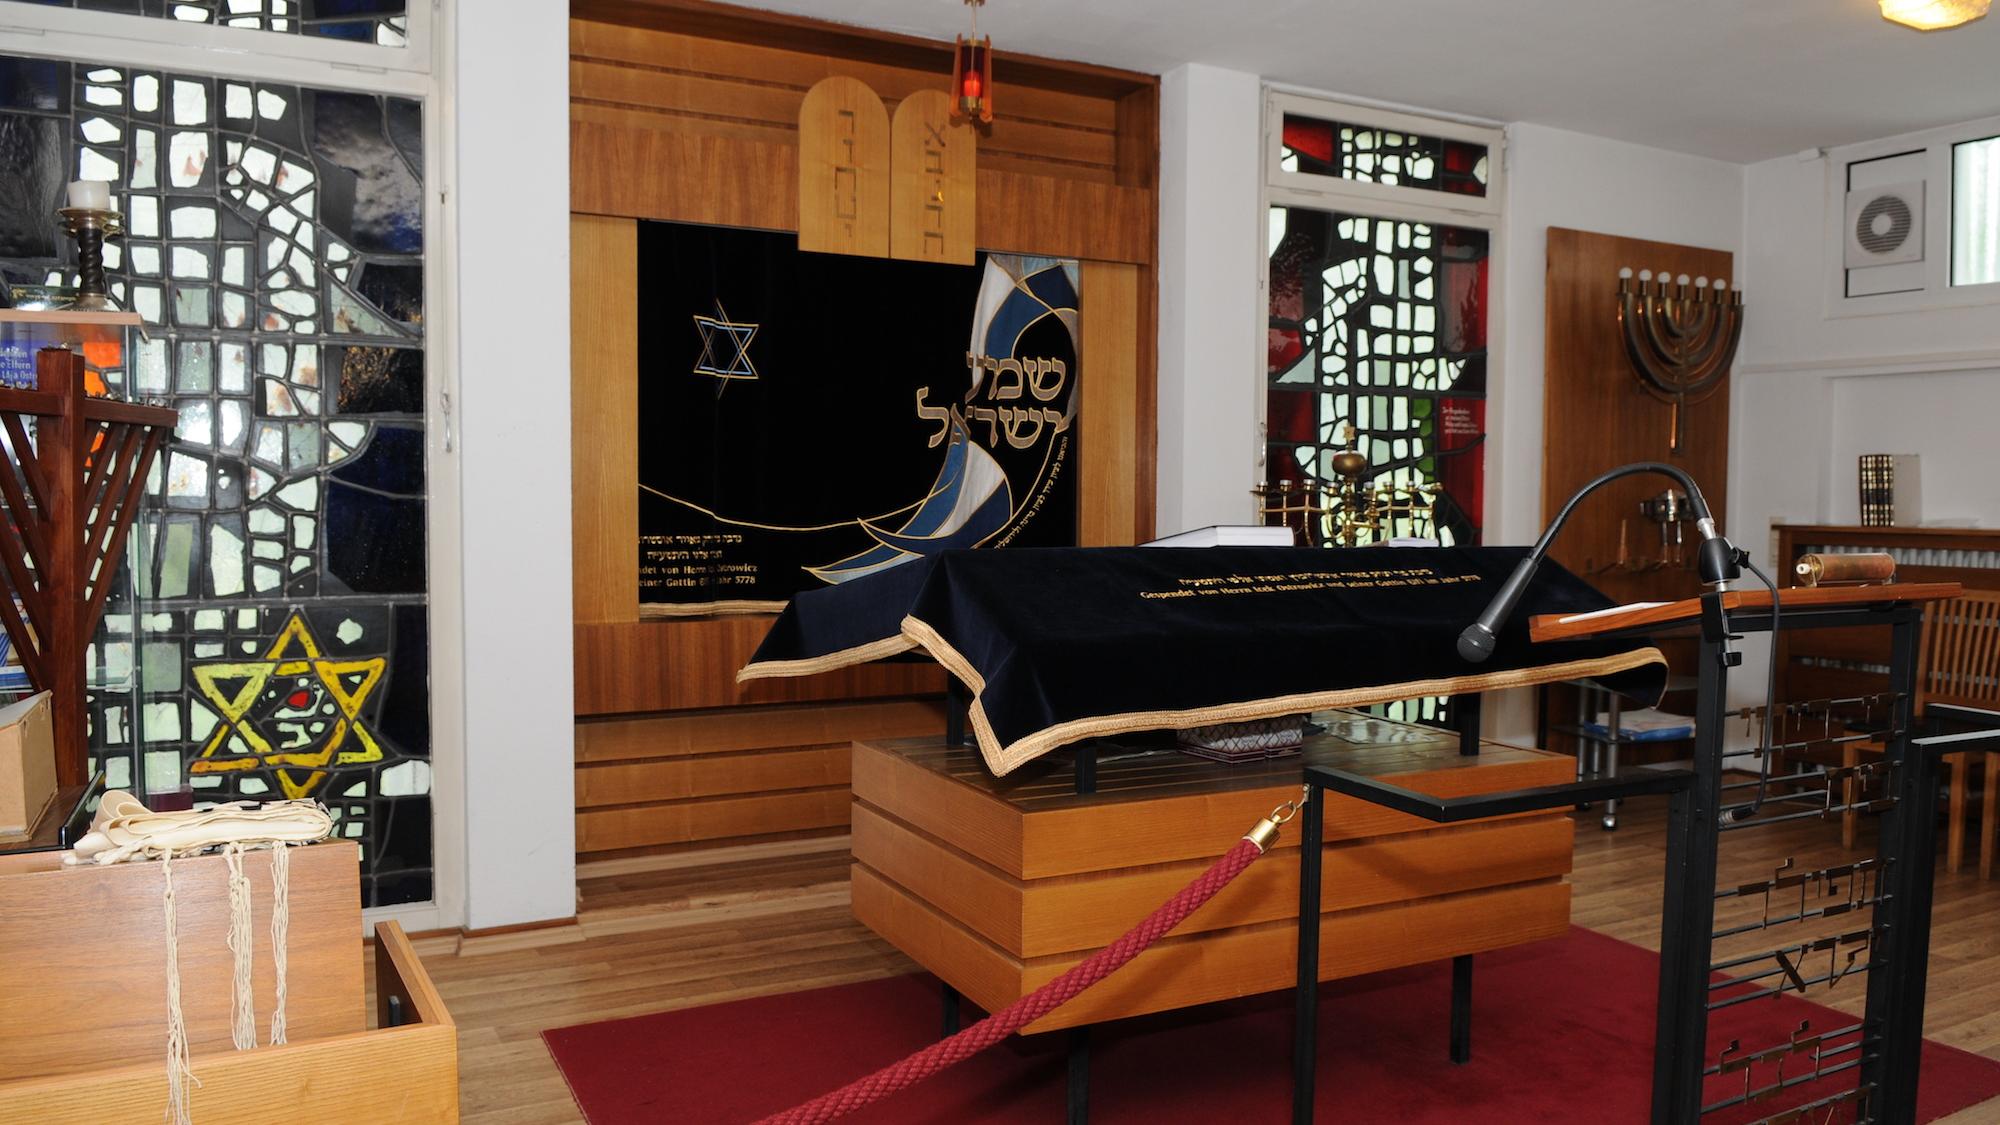 Am 9. November 1938 wurden die Synagogen in Rheydt und Mönchengladbach zerstört. Beide waren sichtbare Zeichen jüdischen Lebens und Glaubens in der Stadt. 81 Jahre später muss die heutige Synagoge immer noch von der Polizei bewacht werden. (c) Garnet Manecke